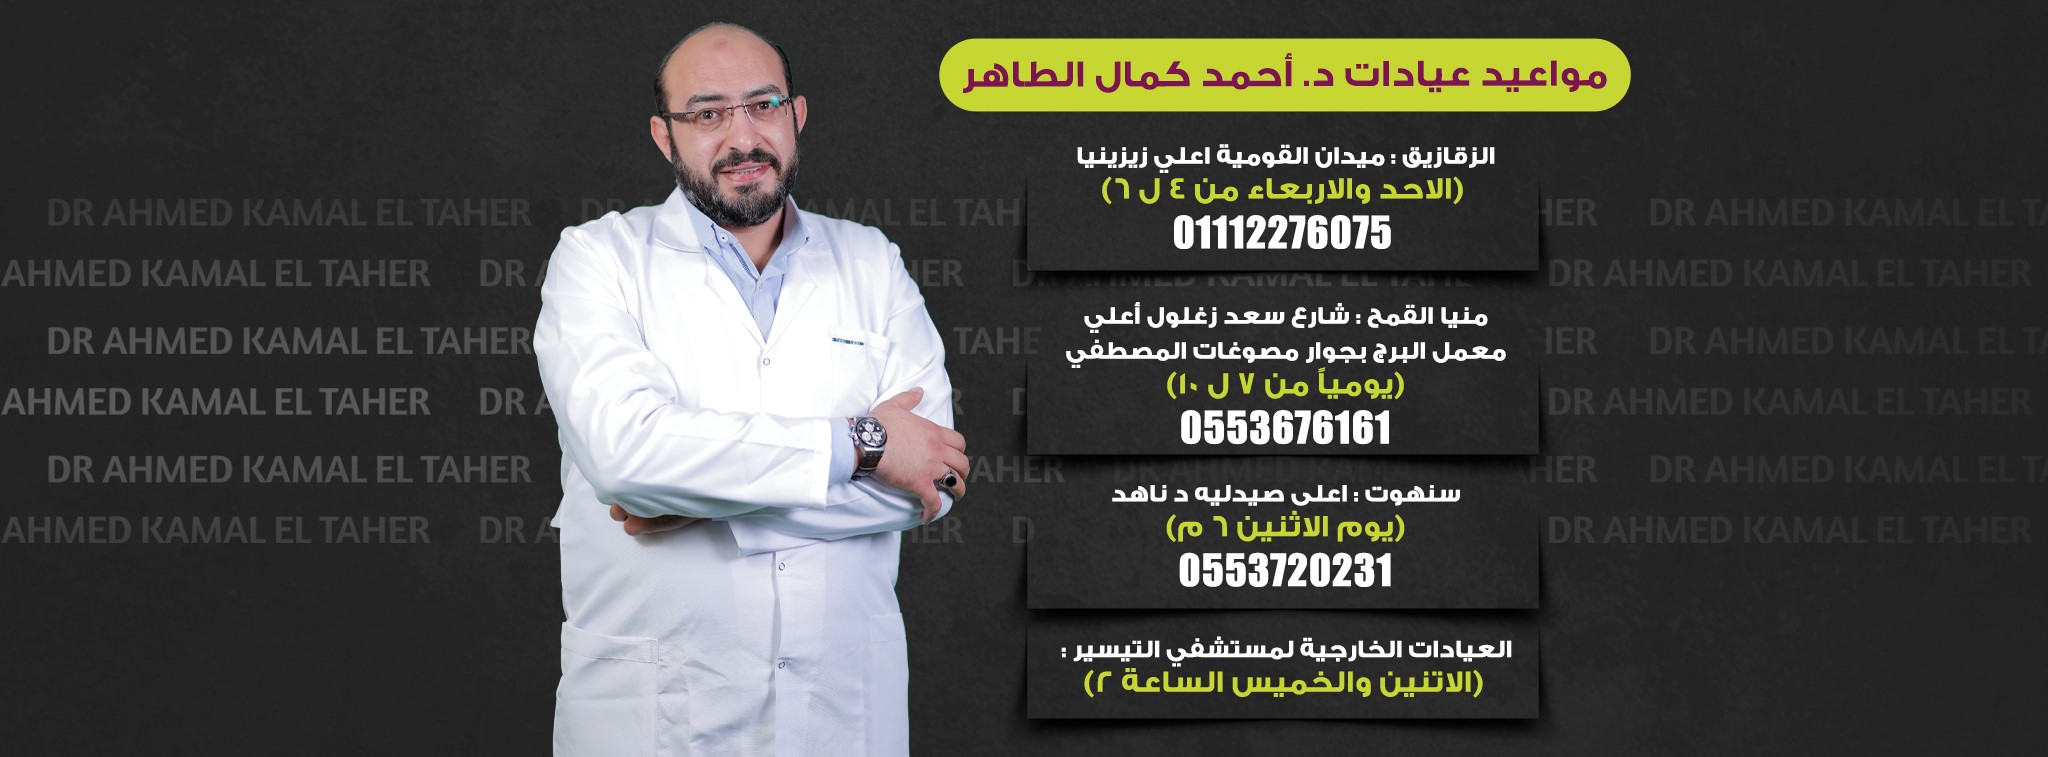 غلاف Dr Ahmed Kamal El Taher  د أحمد كمال الطاهر